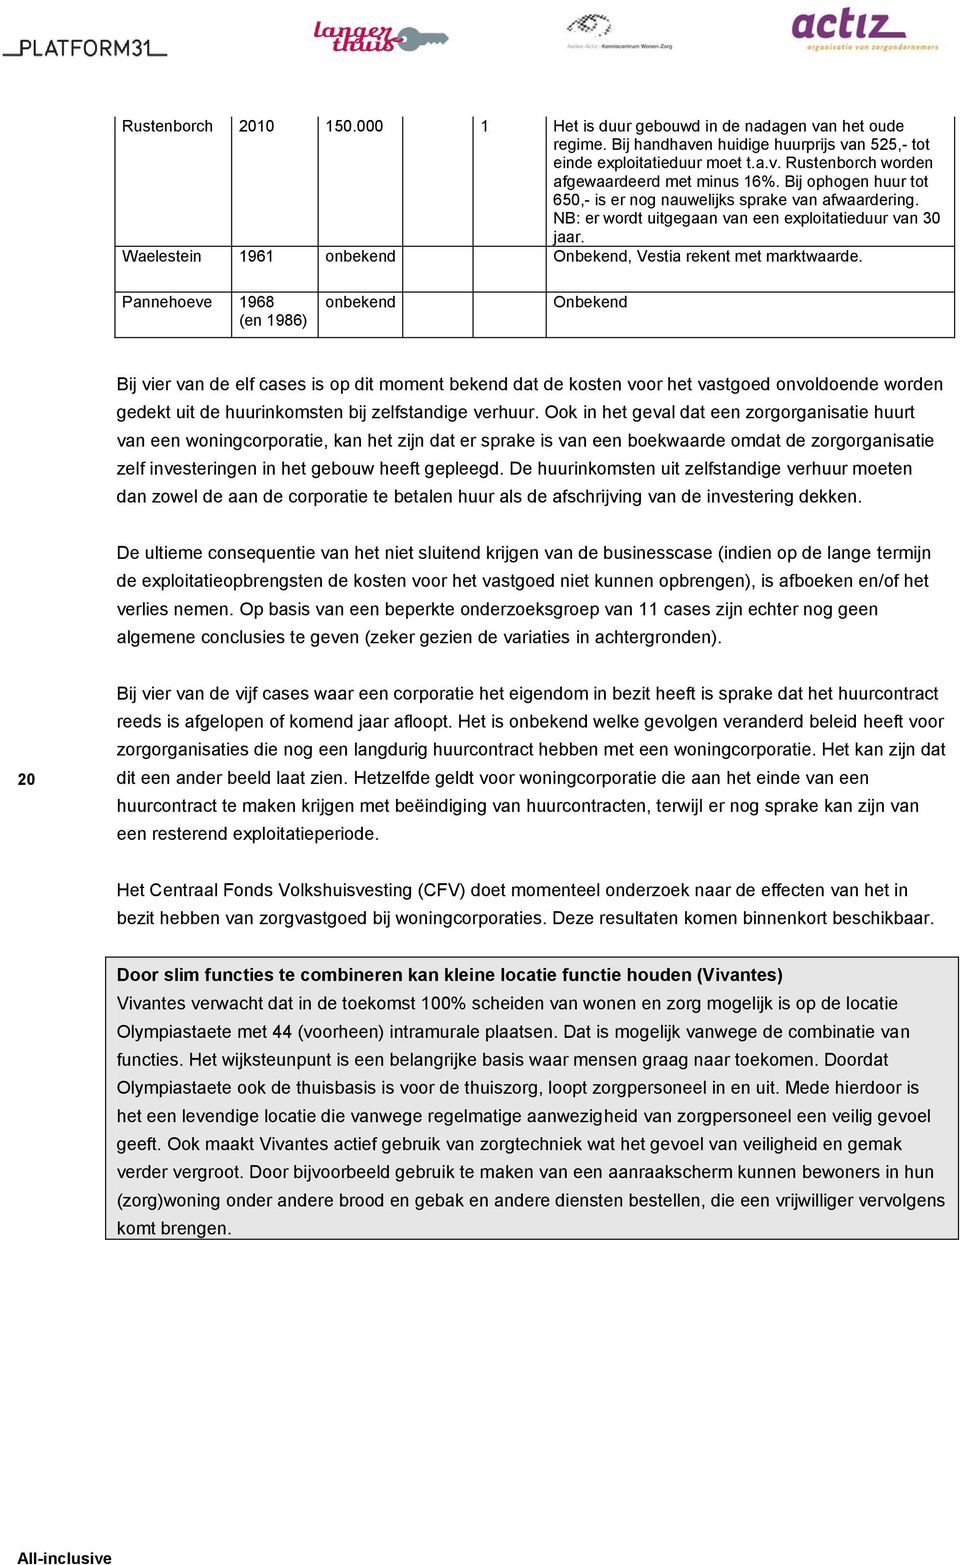 Pannehoeve 1968 (en 1986) onbekend Onbekend Bij vier van de elf cases is op dit moment bekend dat de kosten voor het vastgoed onvoldoende worden gedekt uit de huurinkomsten bij zelfstandige verhuur.